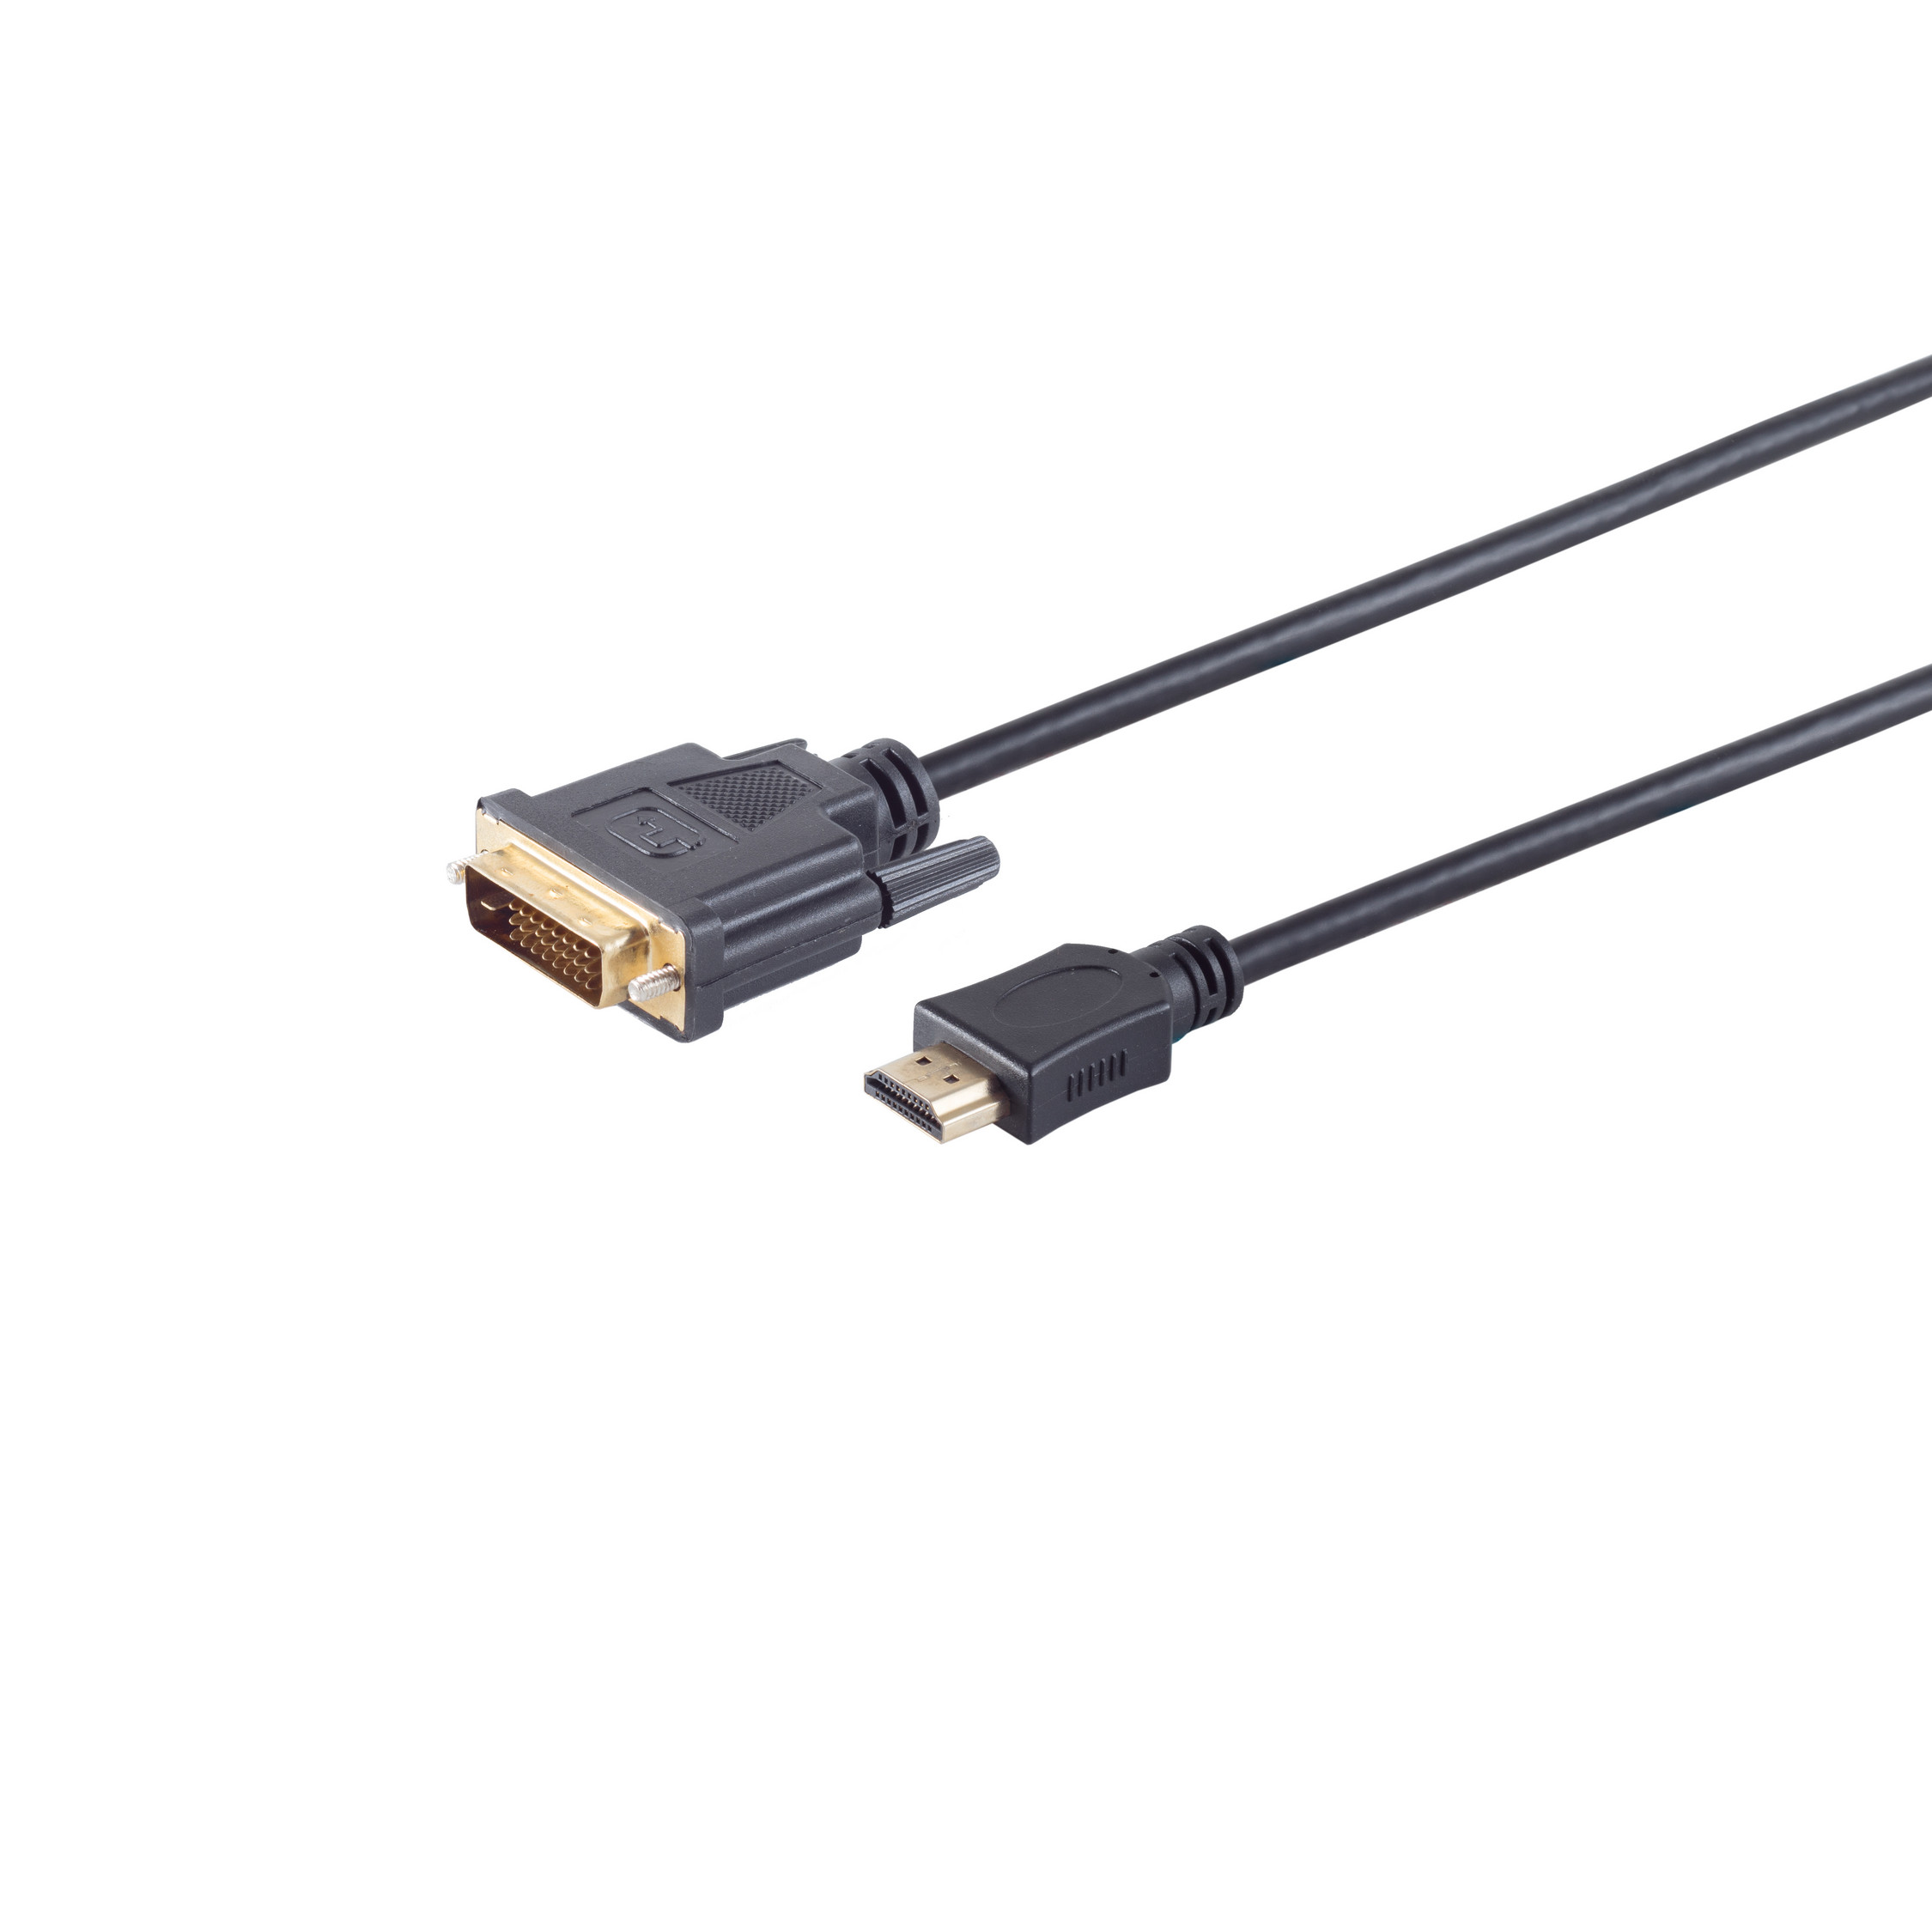 (24+1) verg. MAXIMUM S/CONN HDMI Stecker DVI-D Kabel / HDMI 5m Stecker CONNECTIVITY